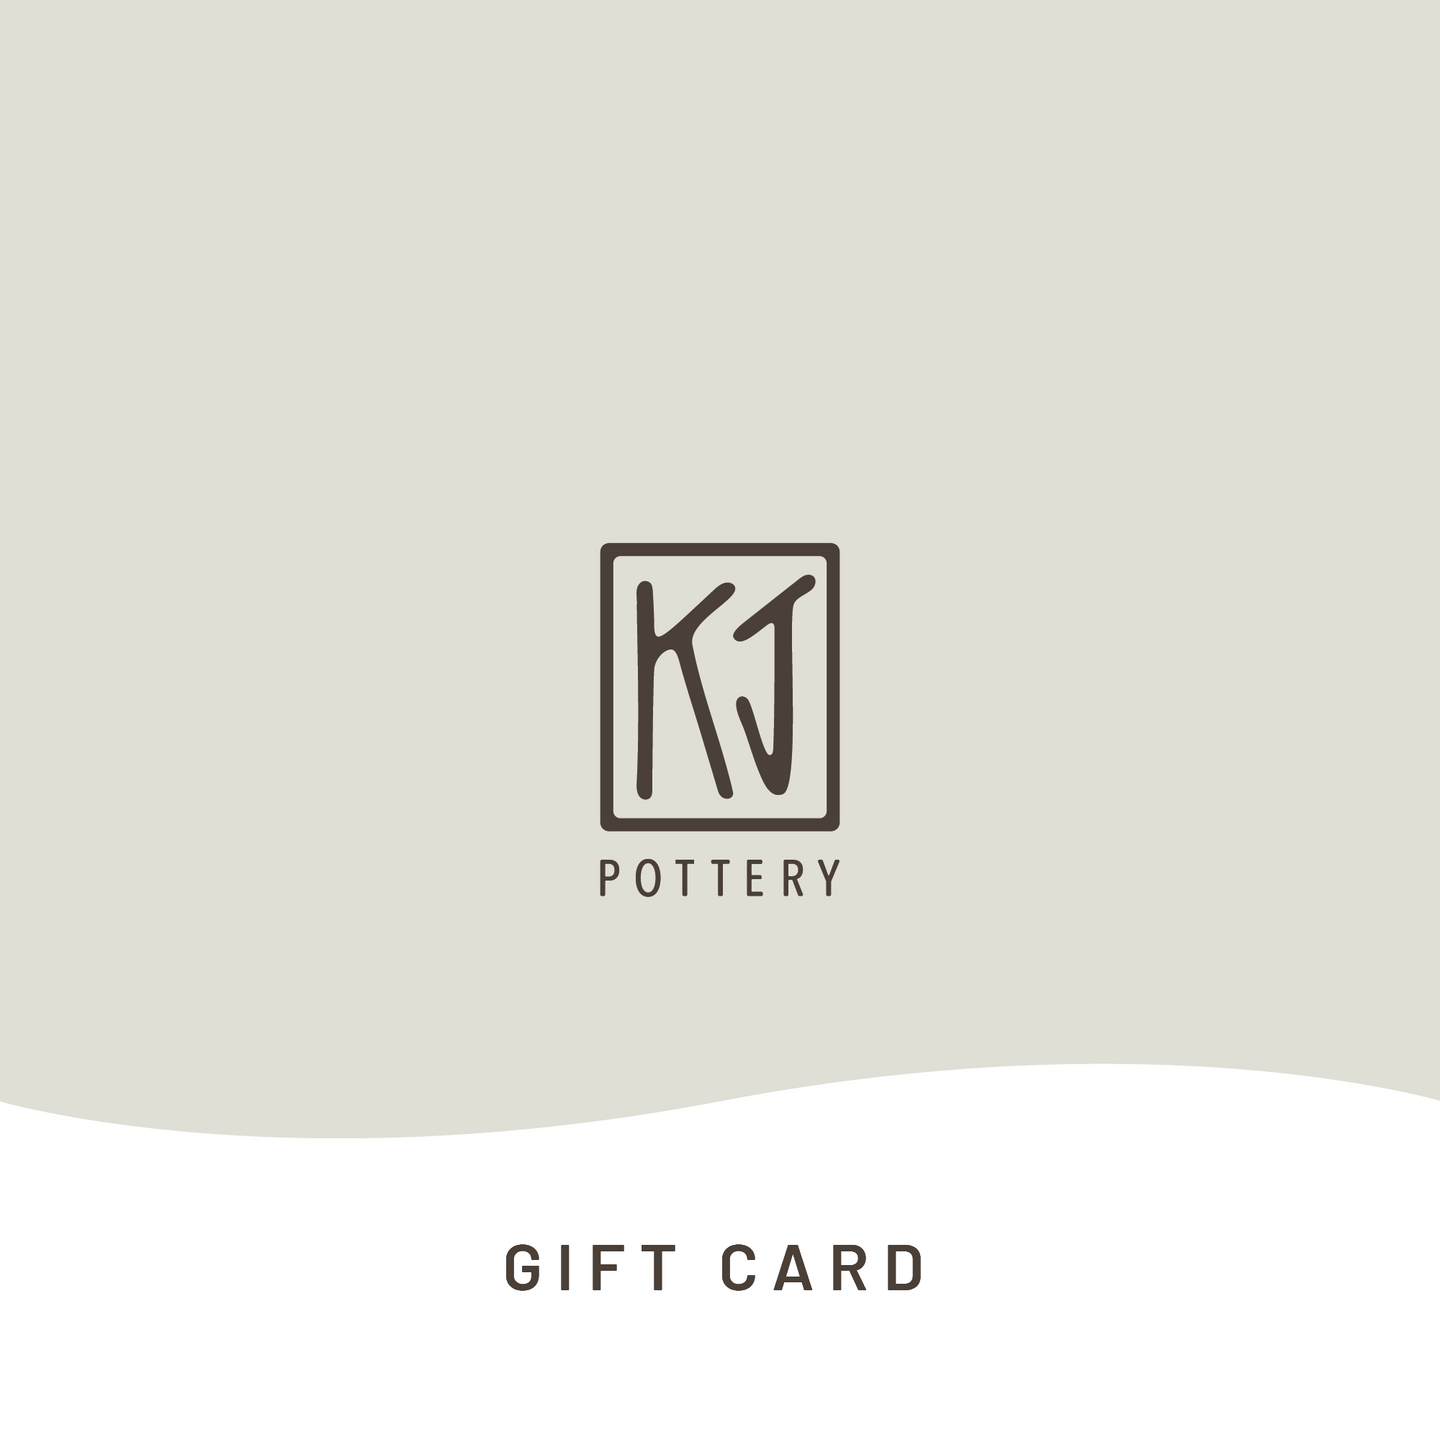 KJ Pottery Gift Card